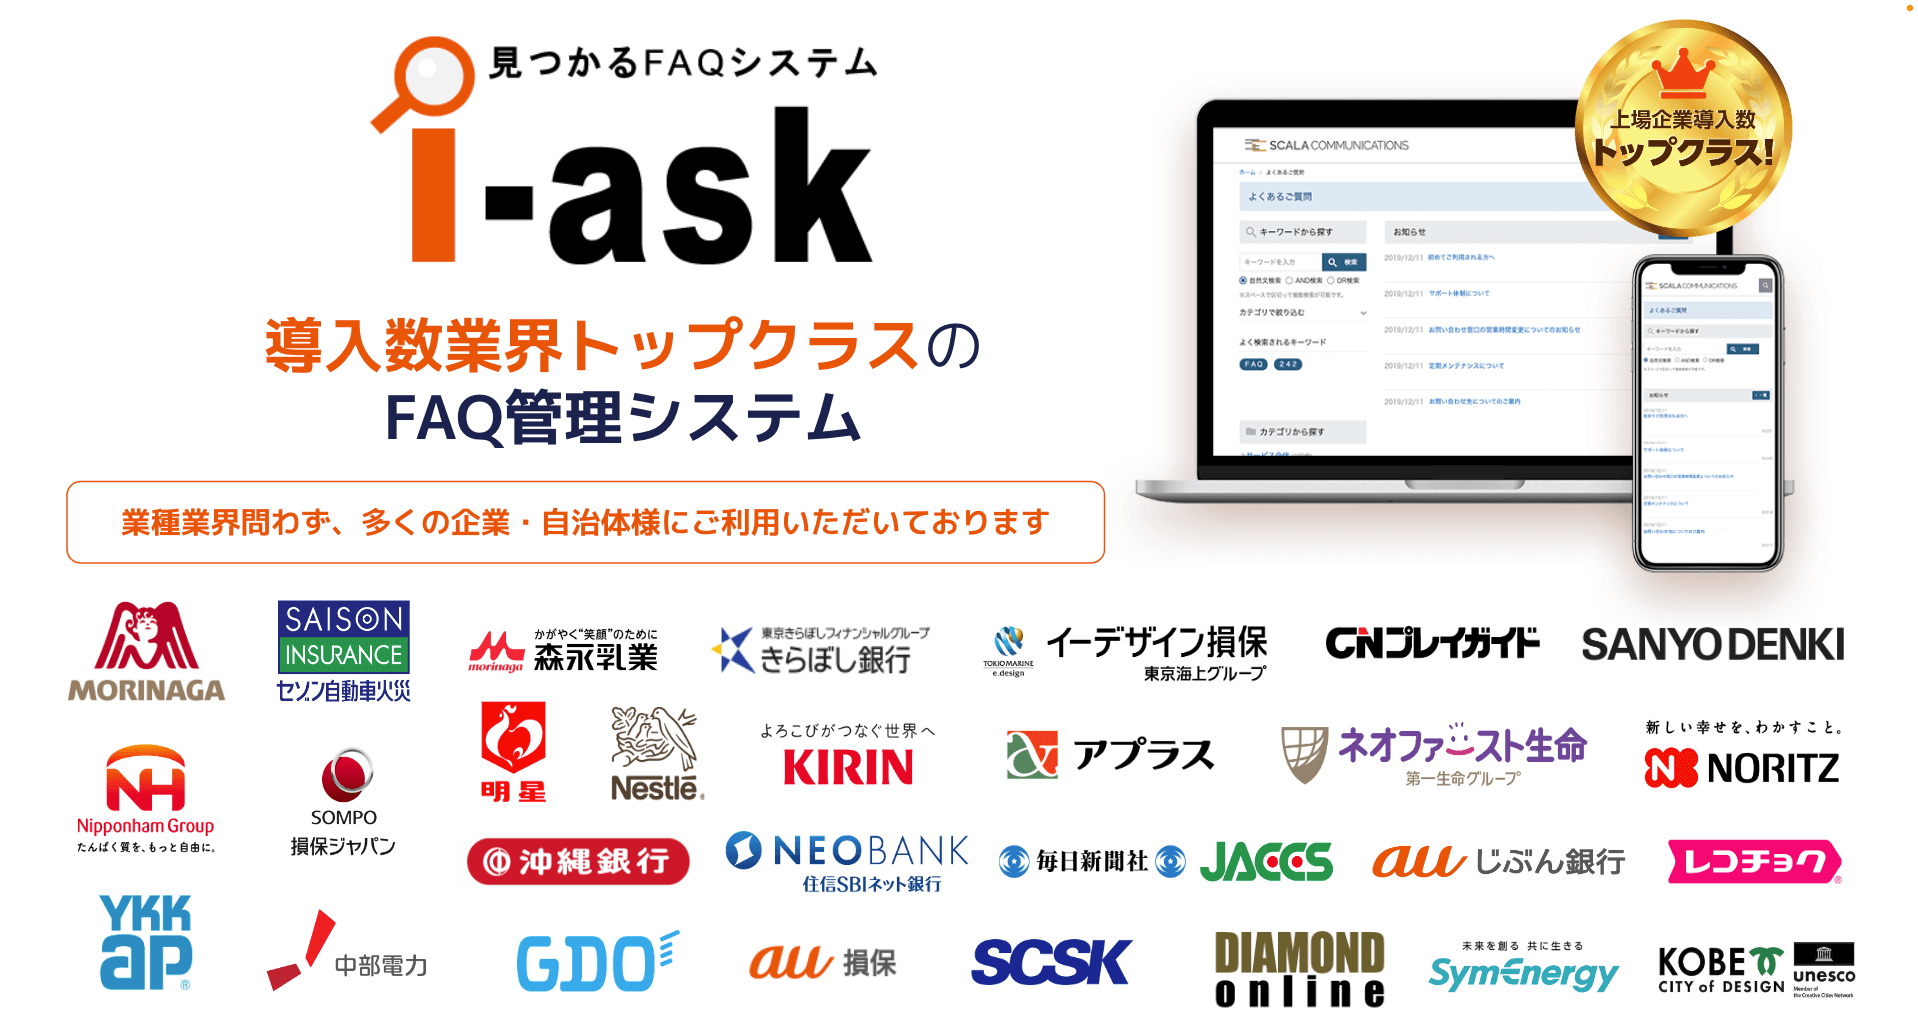 i-ask｜株式会社スカラコミュニケーションズ｜ChatGPT連携サービス｜AI